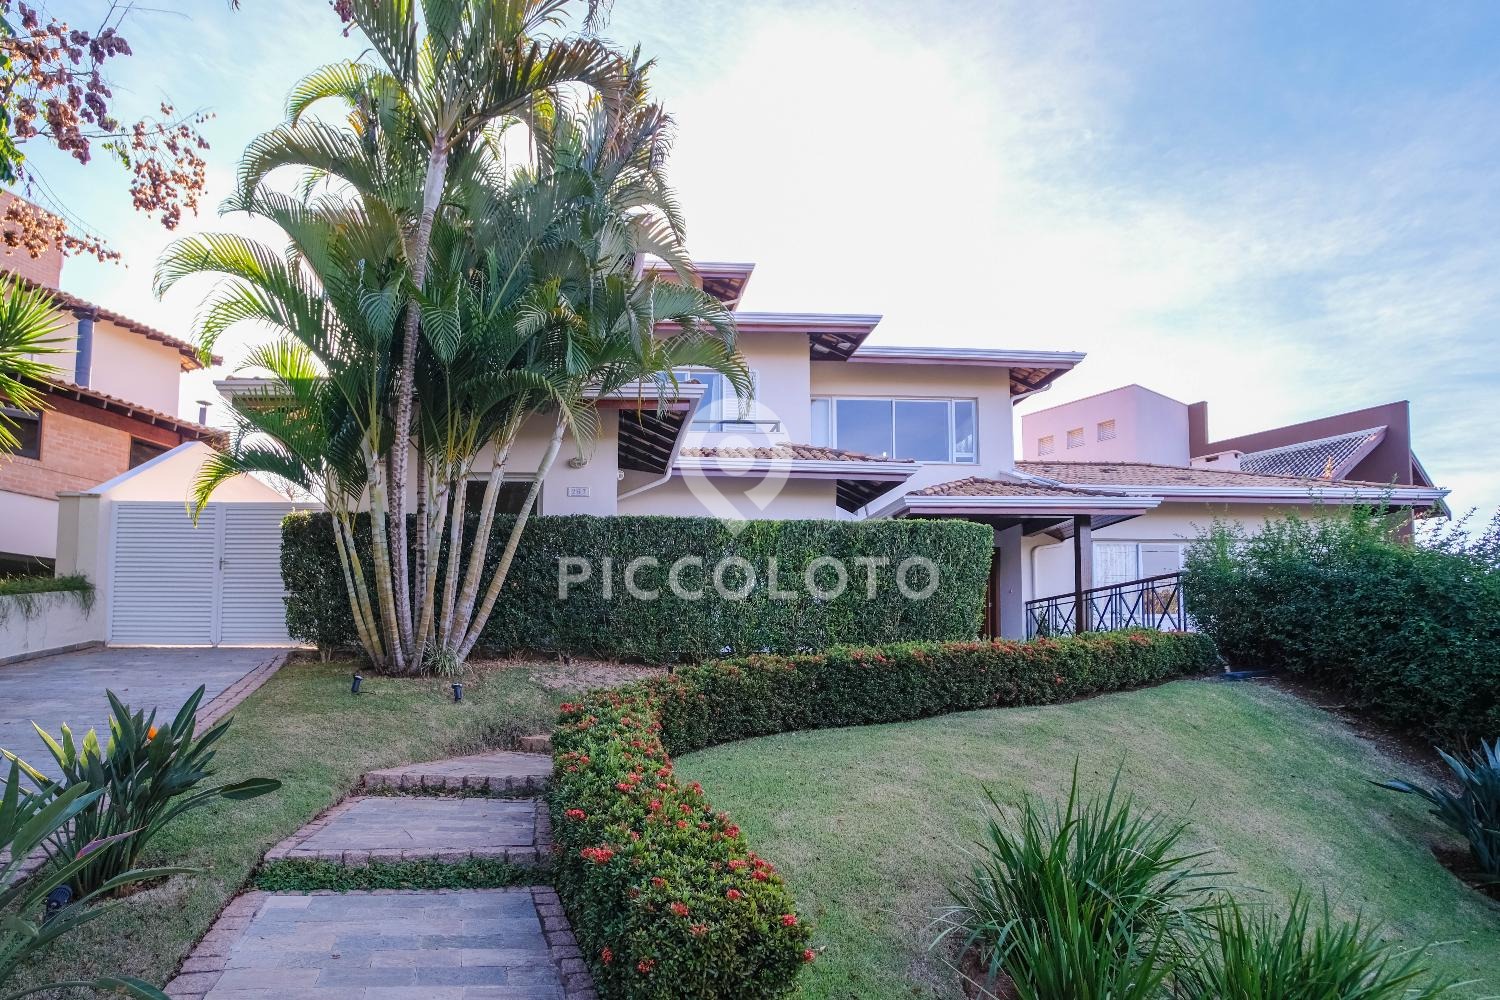 Piccoloto - Casa à venda no Loteamento Arboreto dos Jequitibás (Sousas) em Campinas